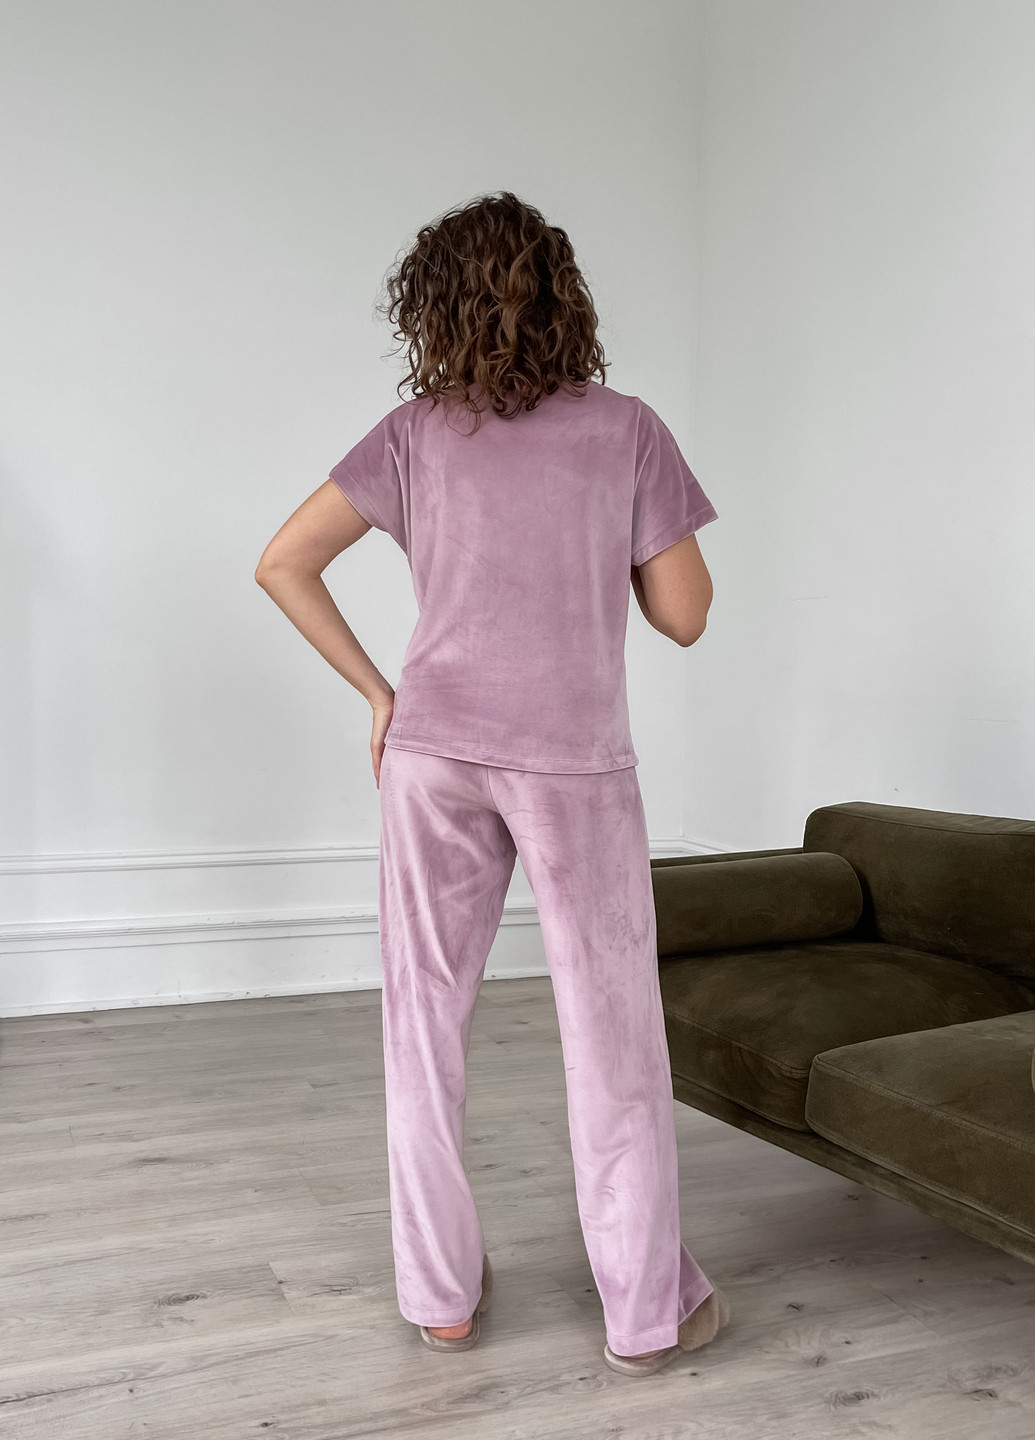 Пудровая всесезон велюровая женская пижама: брюки, футболка пудрового цвета 100000301 футболка + брюки Merlini Медио